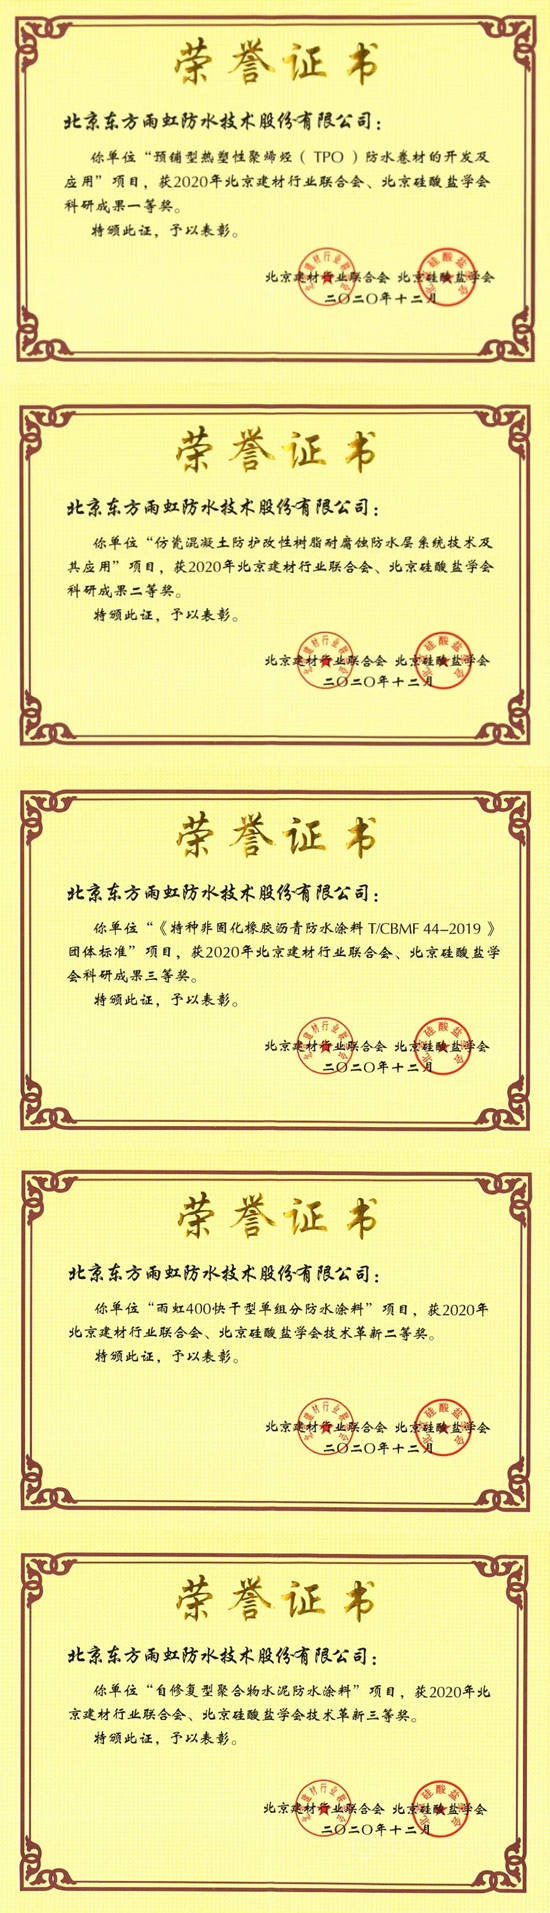 东方雨虹荣获2020年度“北京建材行业科学技术奖”一等奖等五项大奖